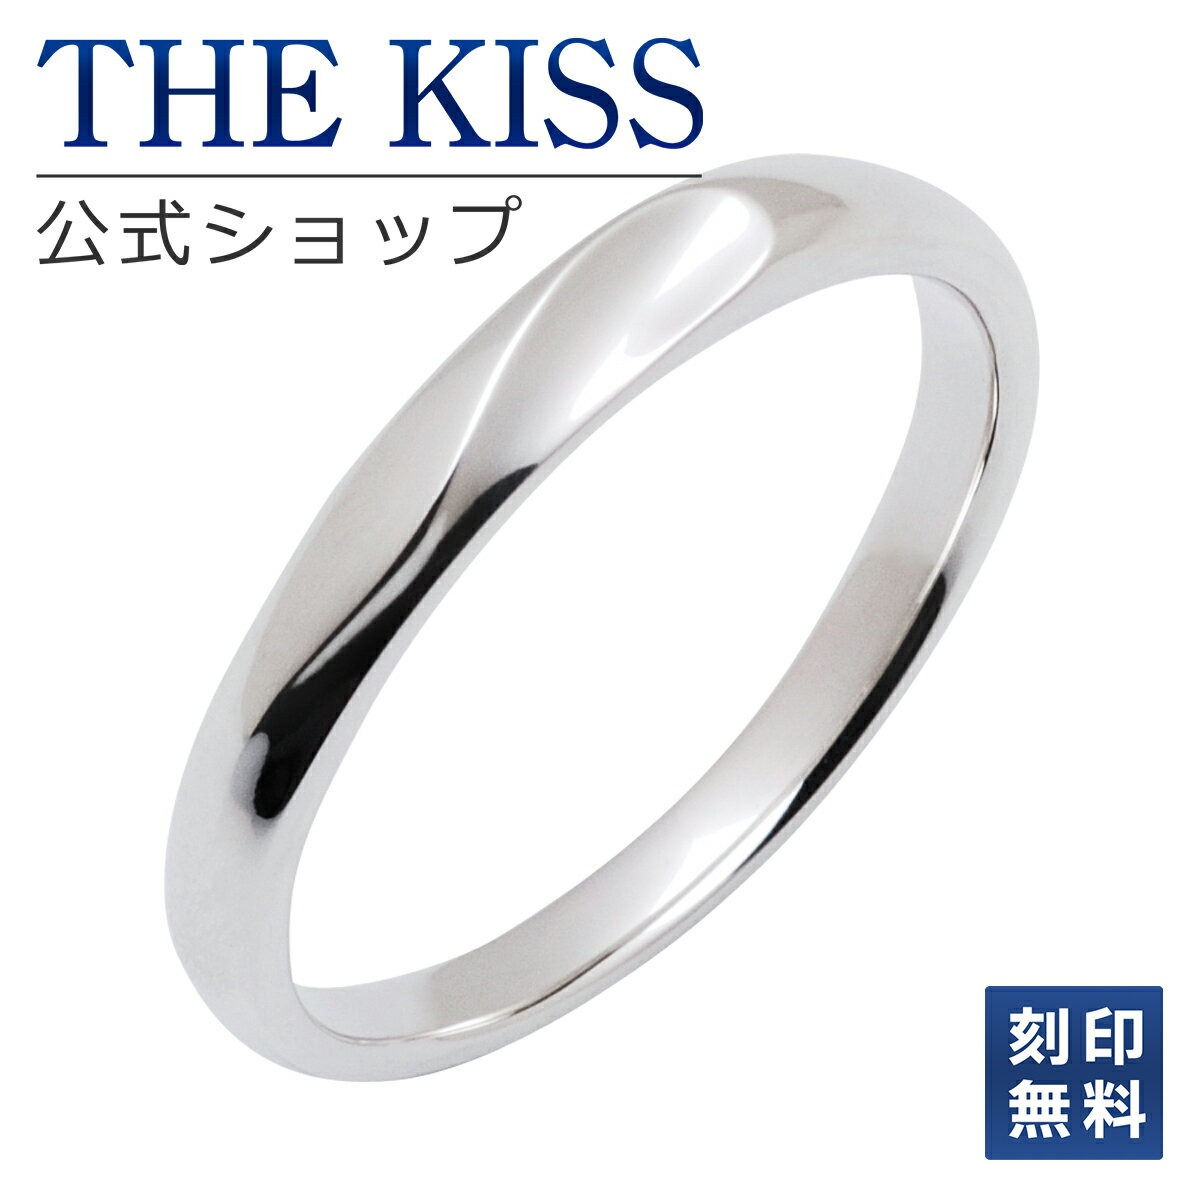 THE KISS 公式ショップ シルバー ペアリング （ メンズ 単品 ） ペアアクセサリー カップル に 人気 の ジュエリーブランド THEKISS ペア リング・指輪 プレゼント SR1640 ブライダル